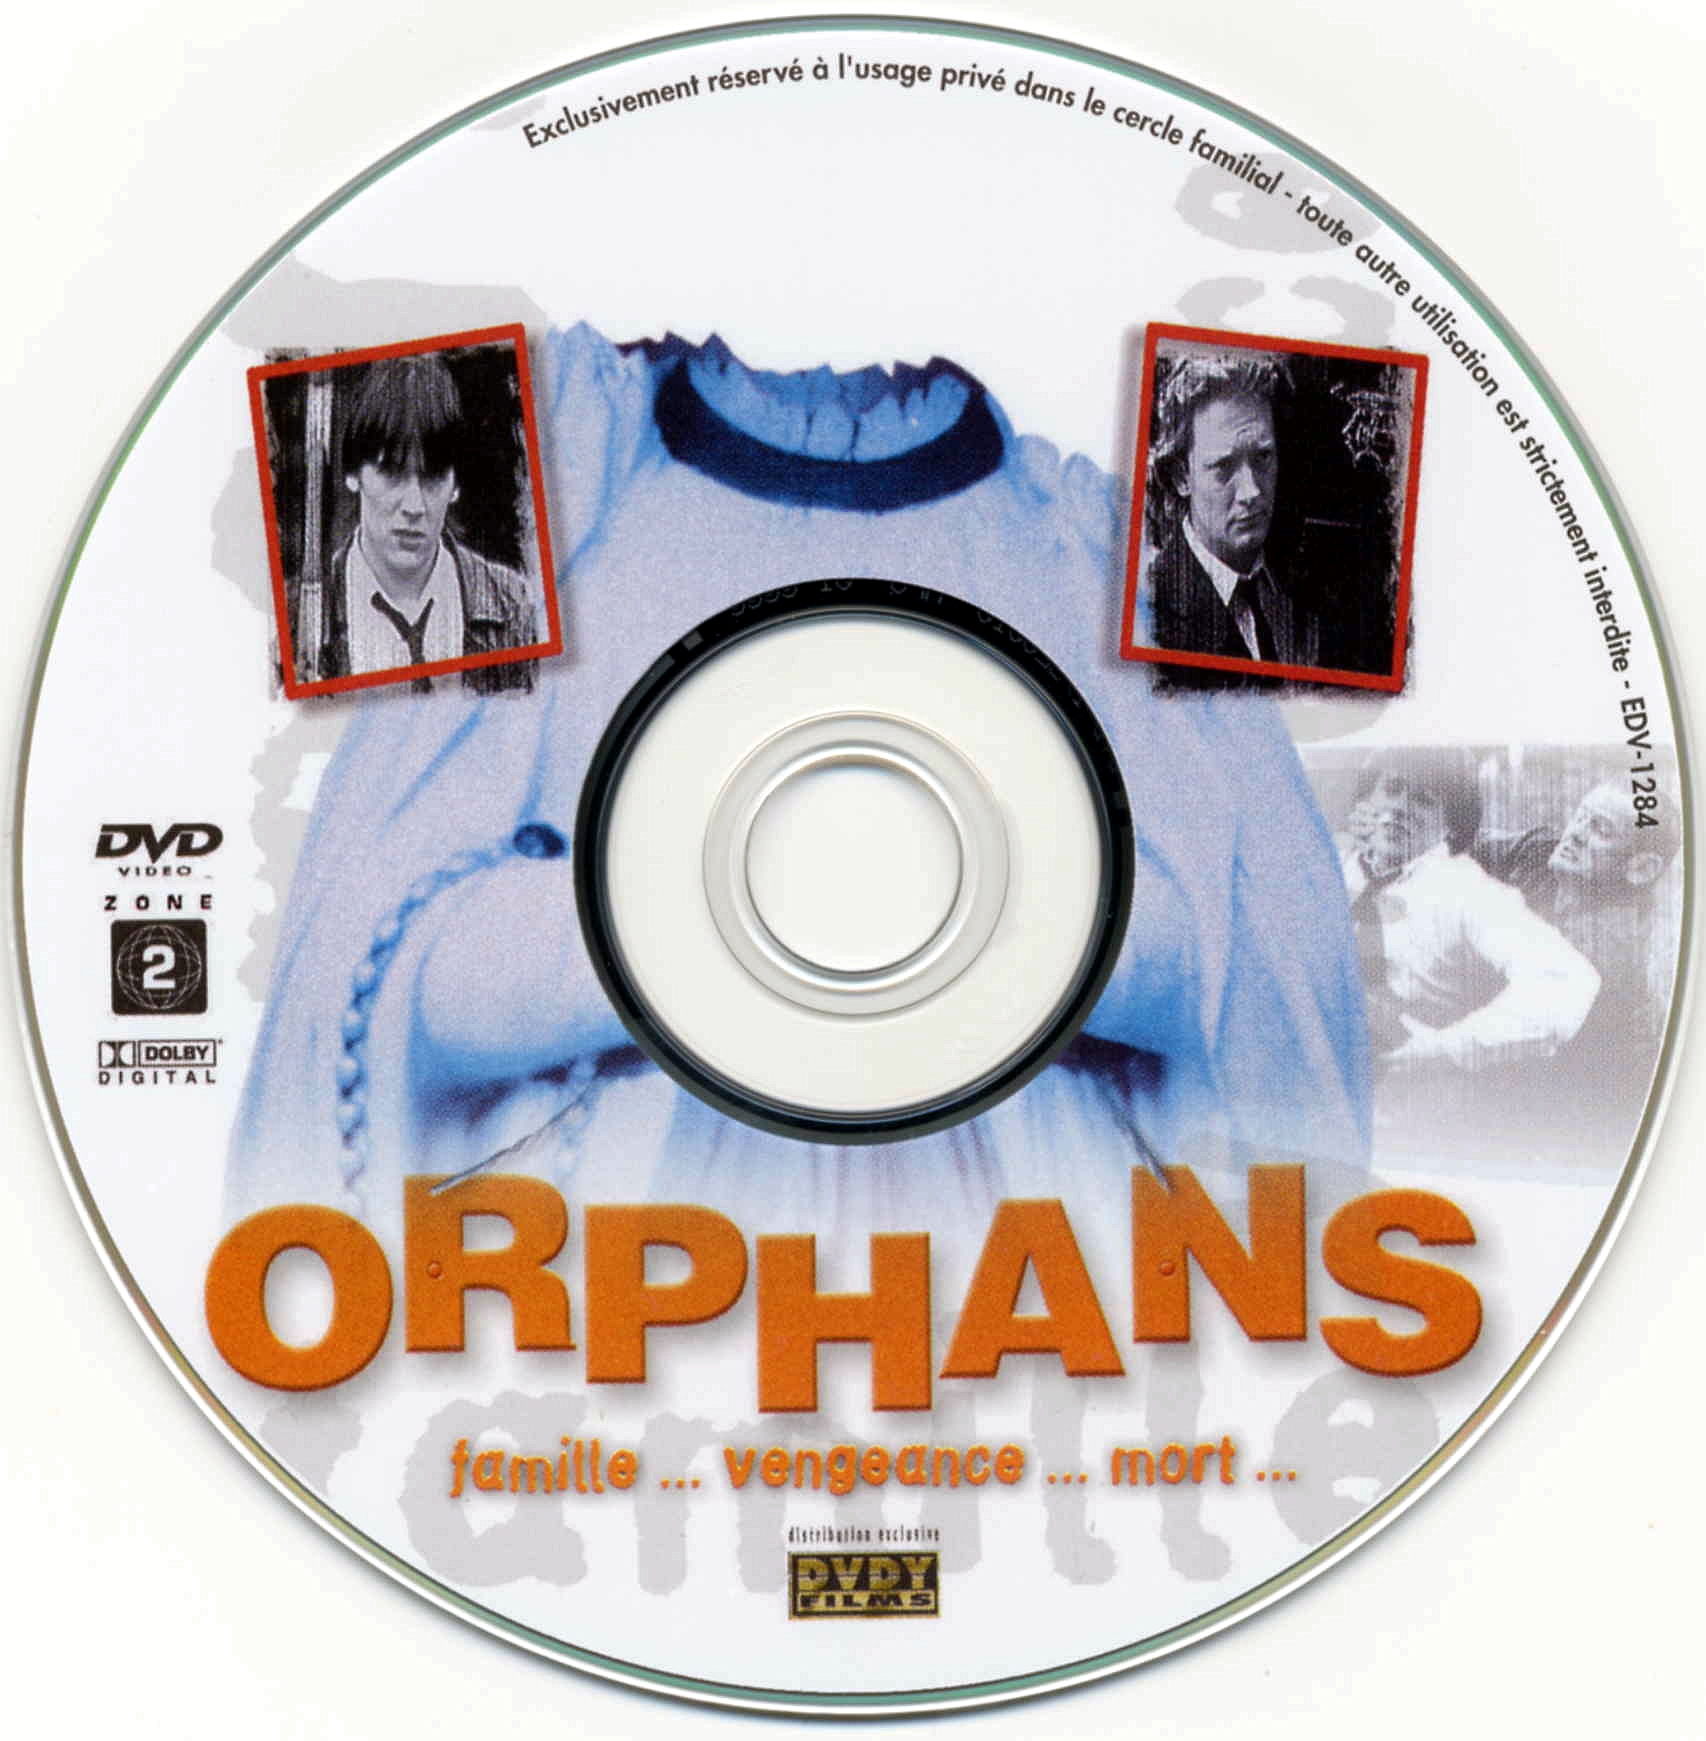 Orphans